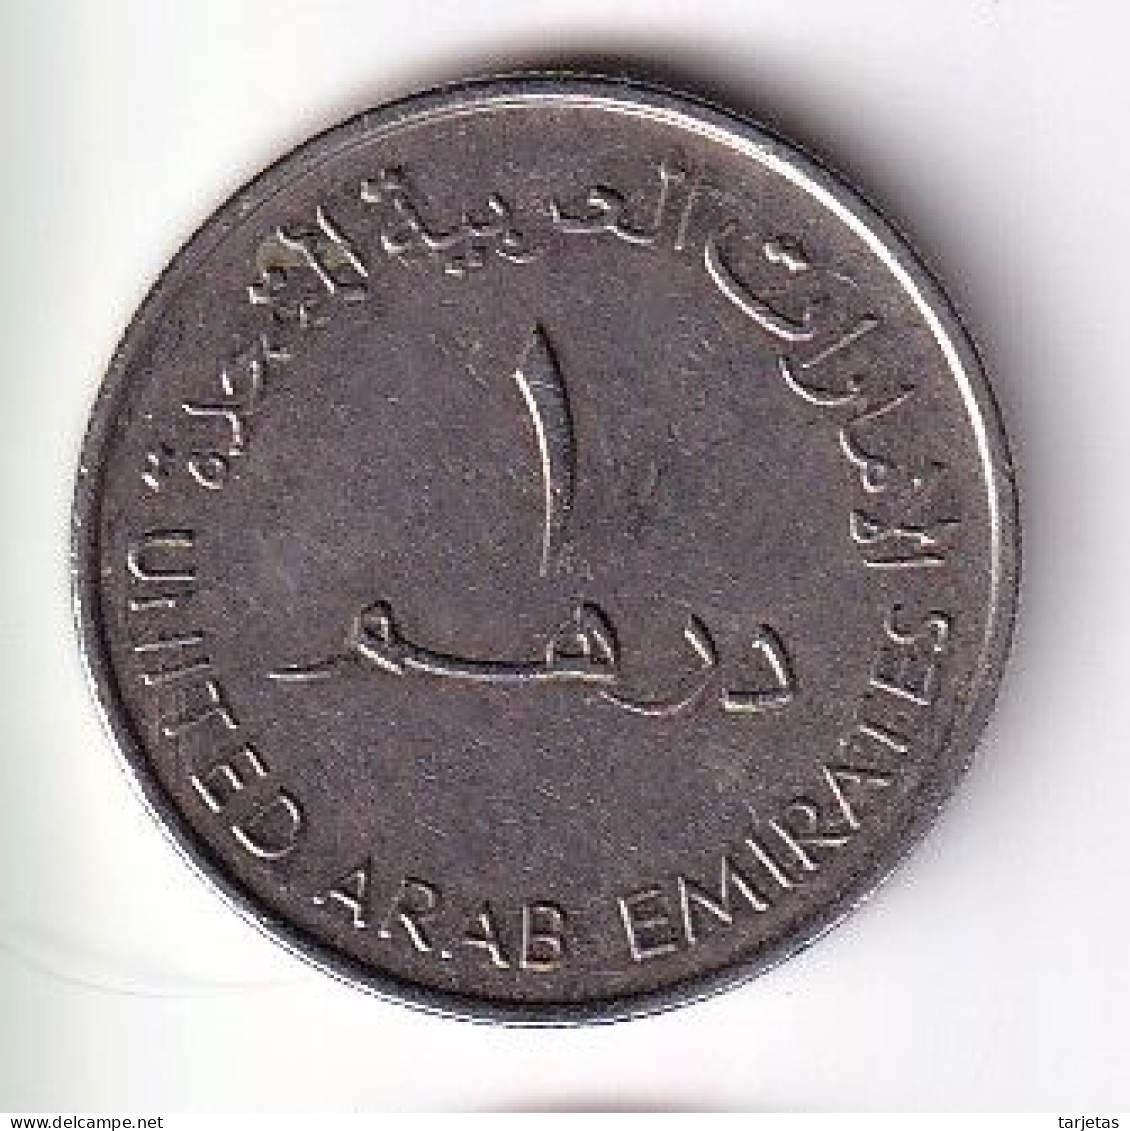 MONEDA DE EMIRATOS ARABES DE 1 DIRHAM DEL AÑO 2010 - I LOVE UAE (COIN) - Emirats Arabes Unis